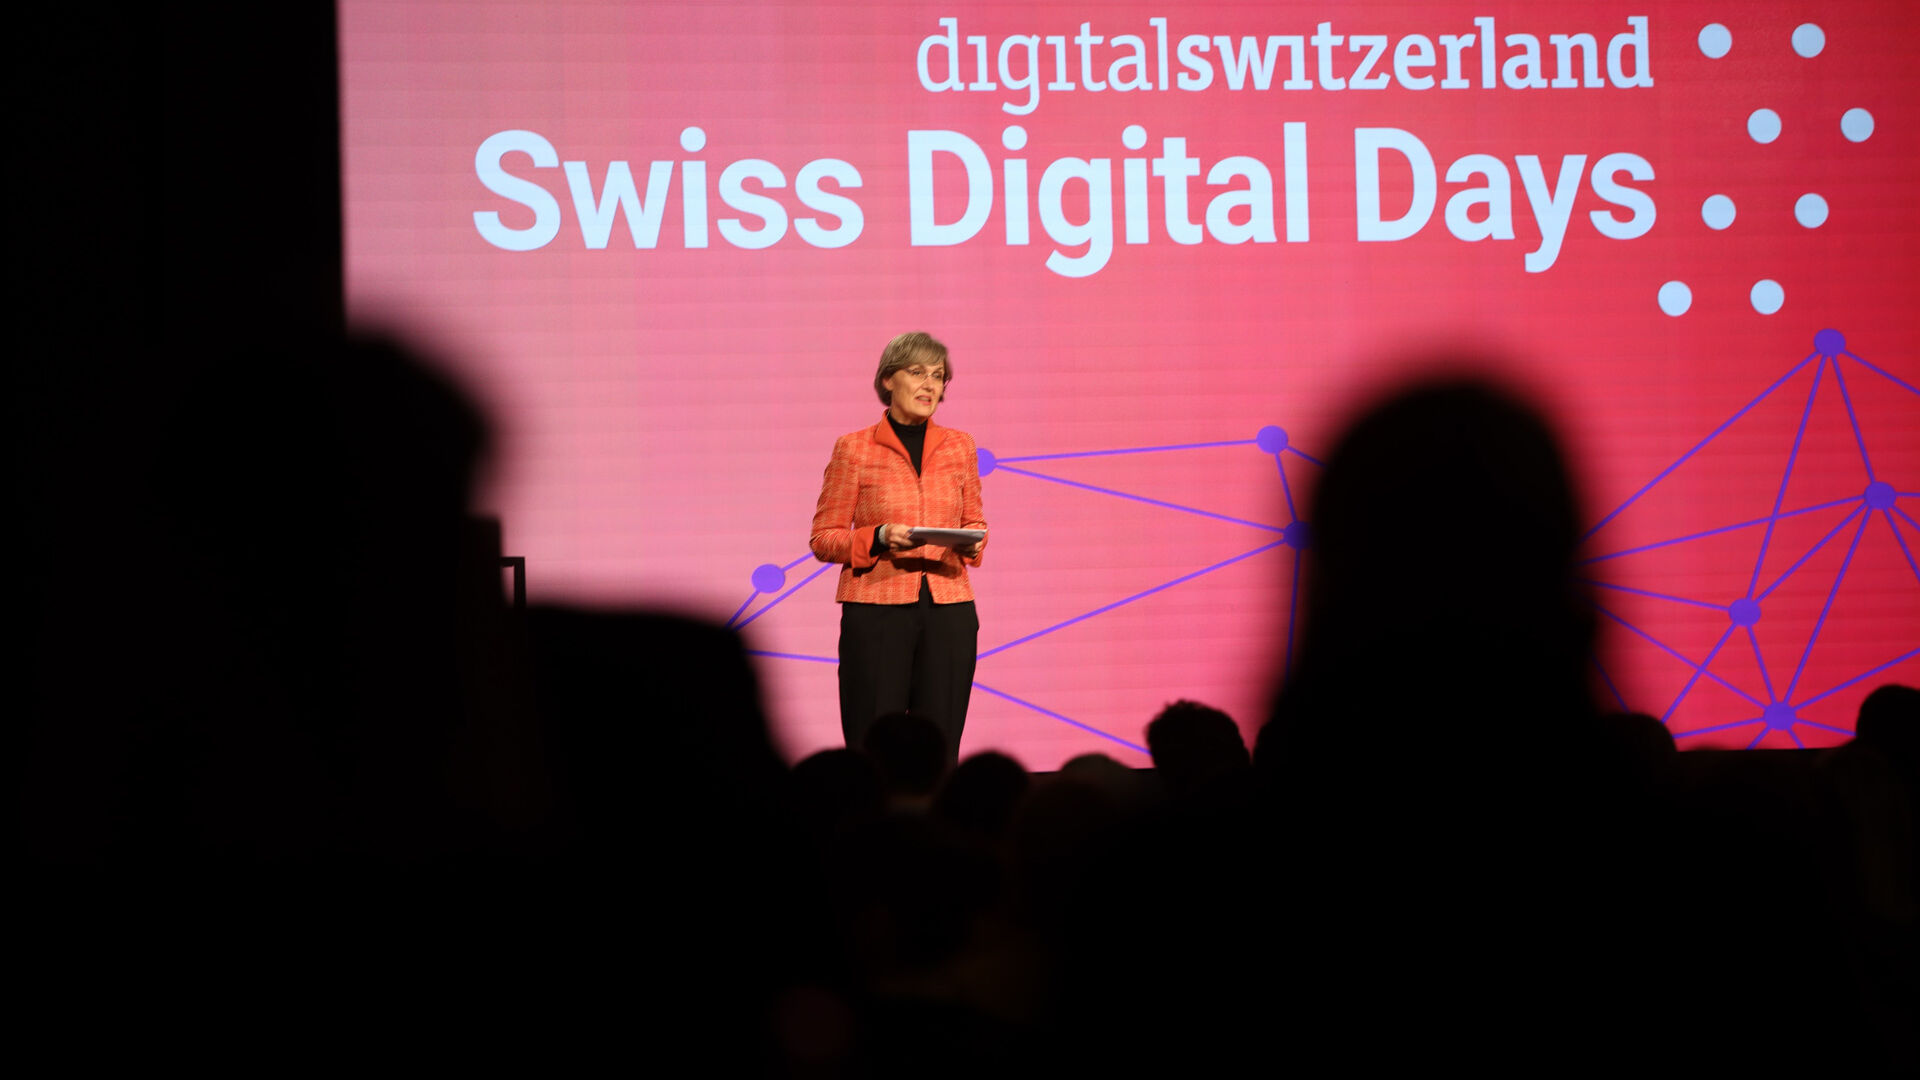 Swiss Digital Days: evenimentul de închidere a „Swiss Digital Days” 2022 la Freiruum din Zug (Zug) pe 27 octombrie